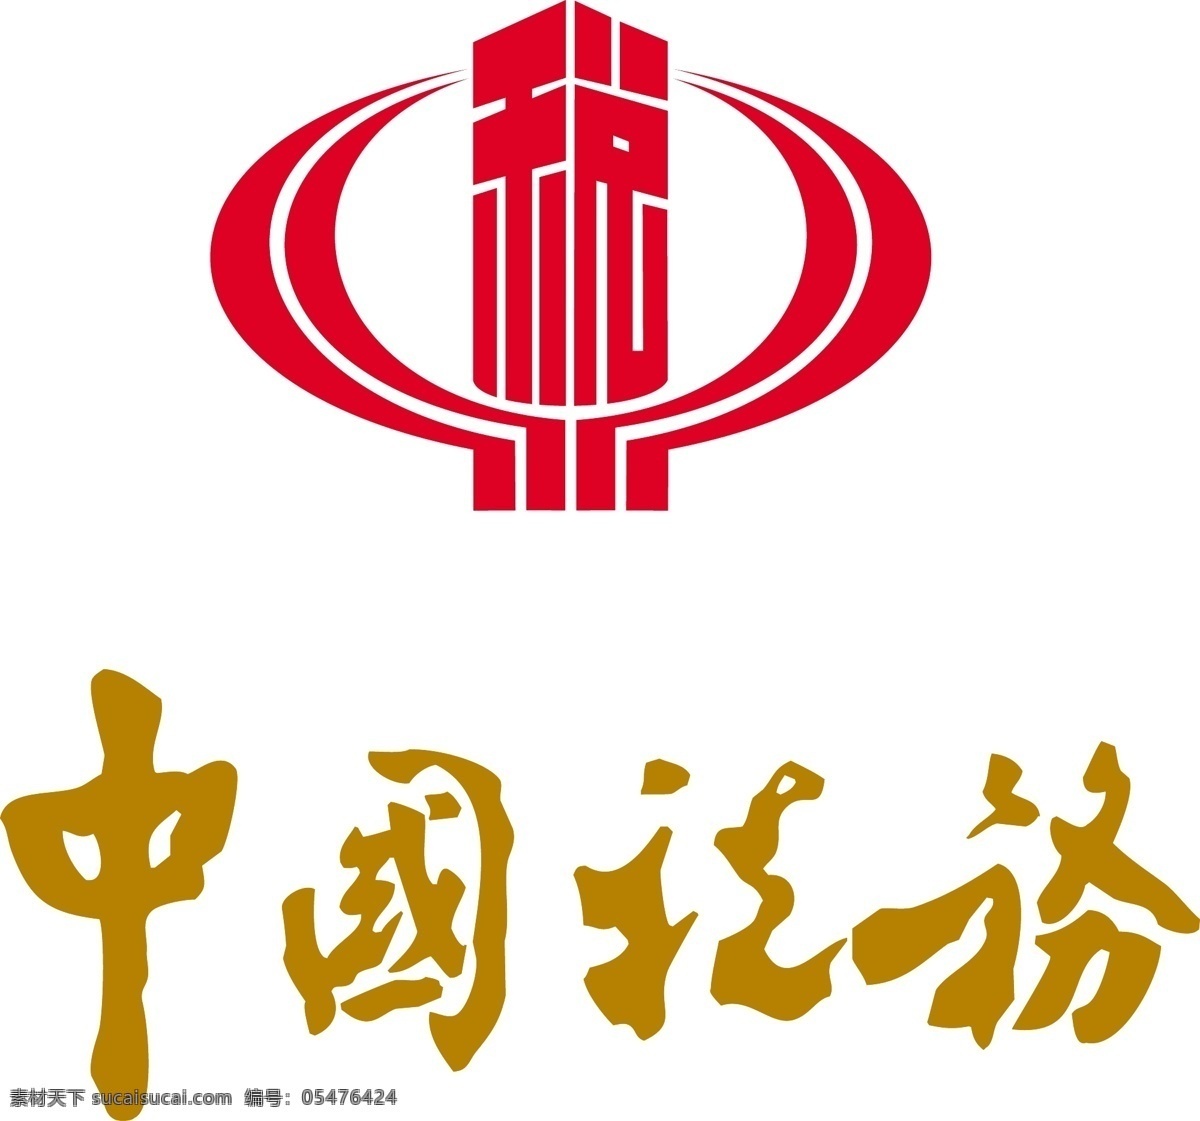 税务logo logo 标识 国税 标识标志图标 企业 标志 矢量图库